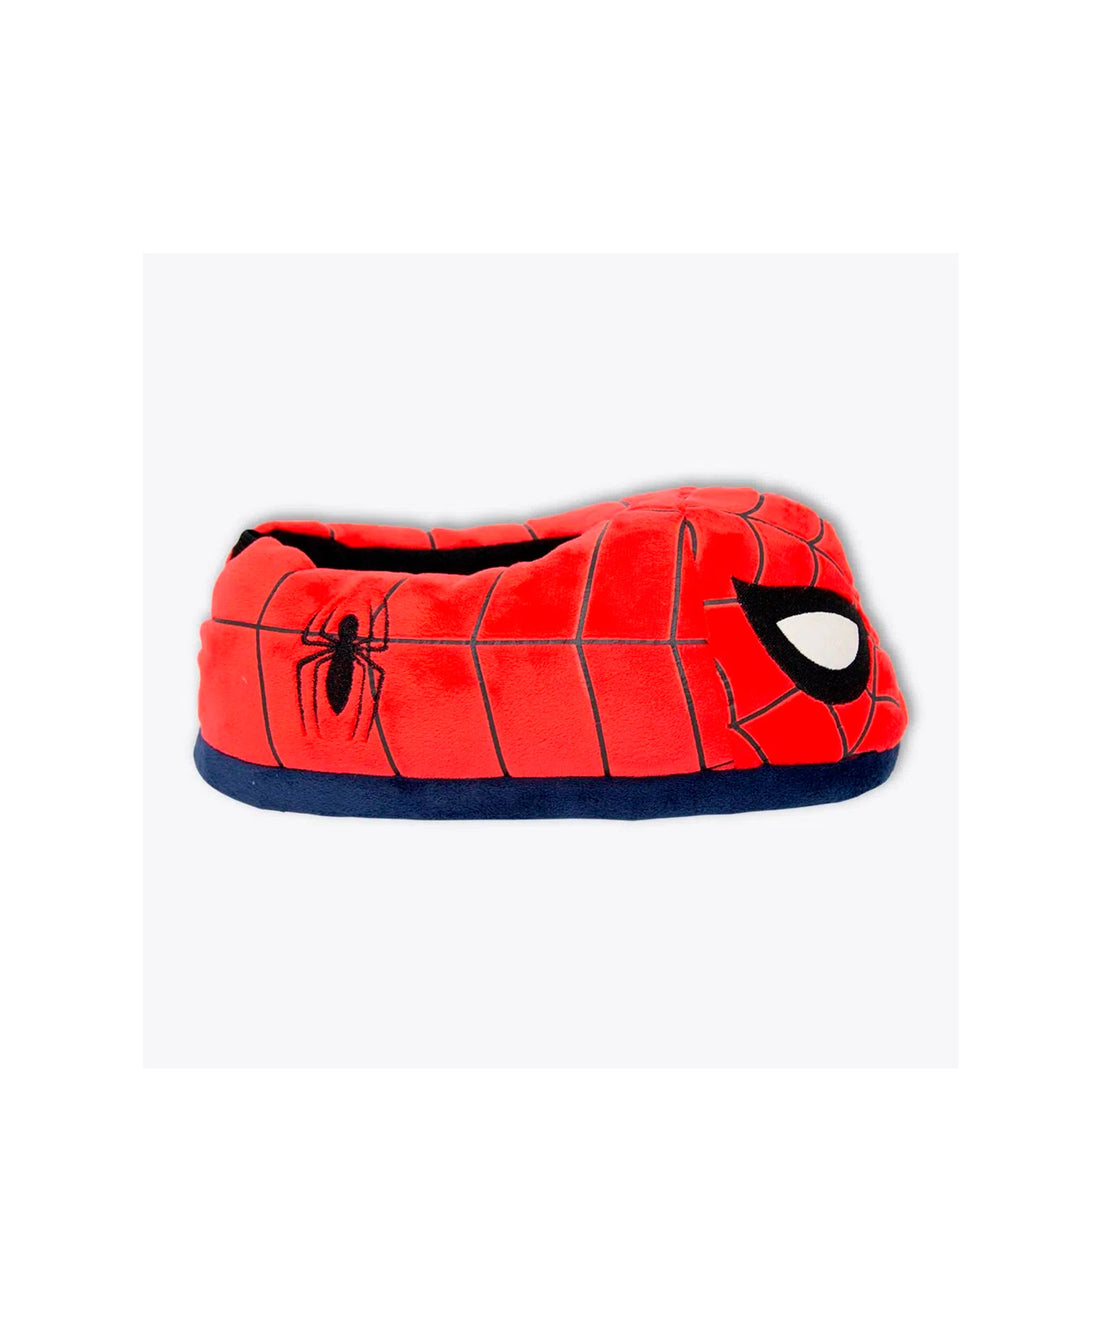 Pantufa Infantil Homem-Aranha - Marvel